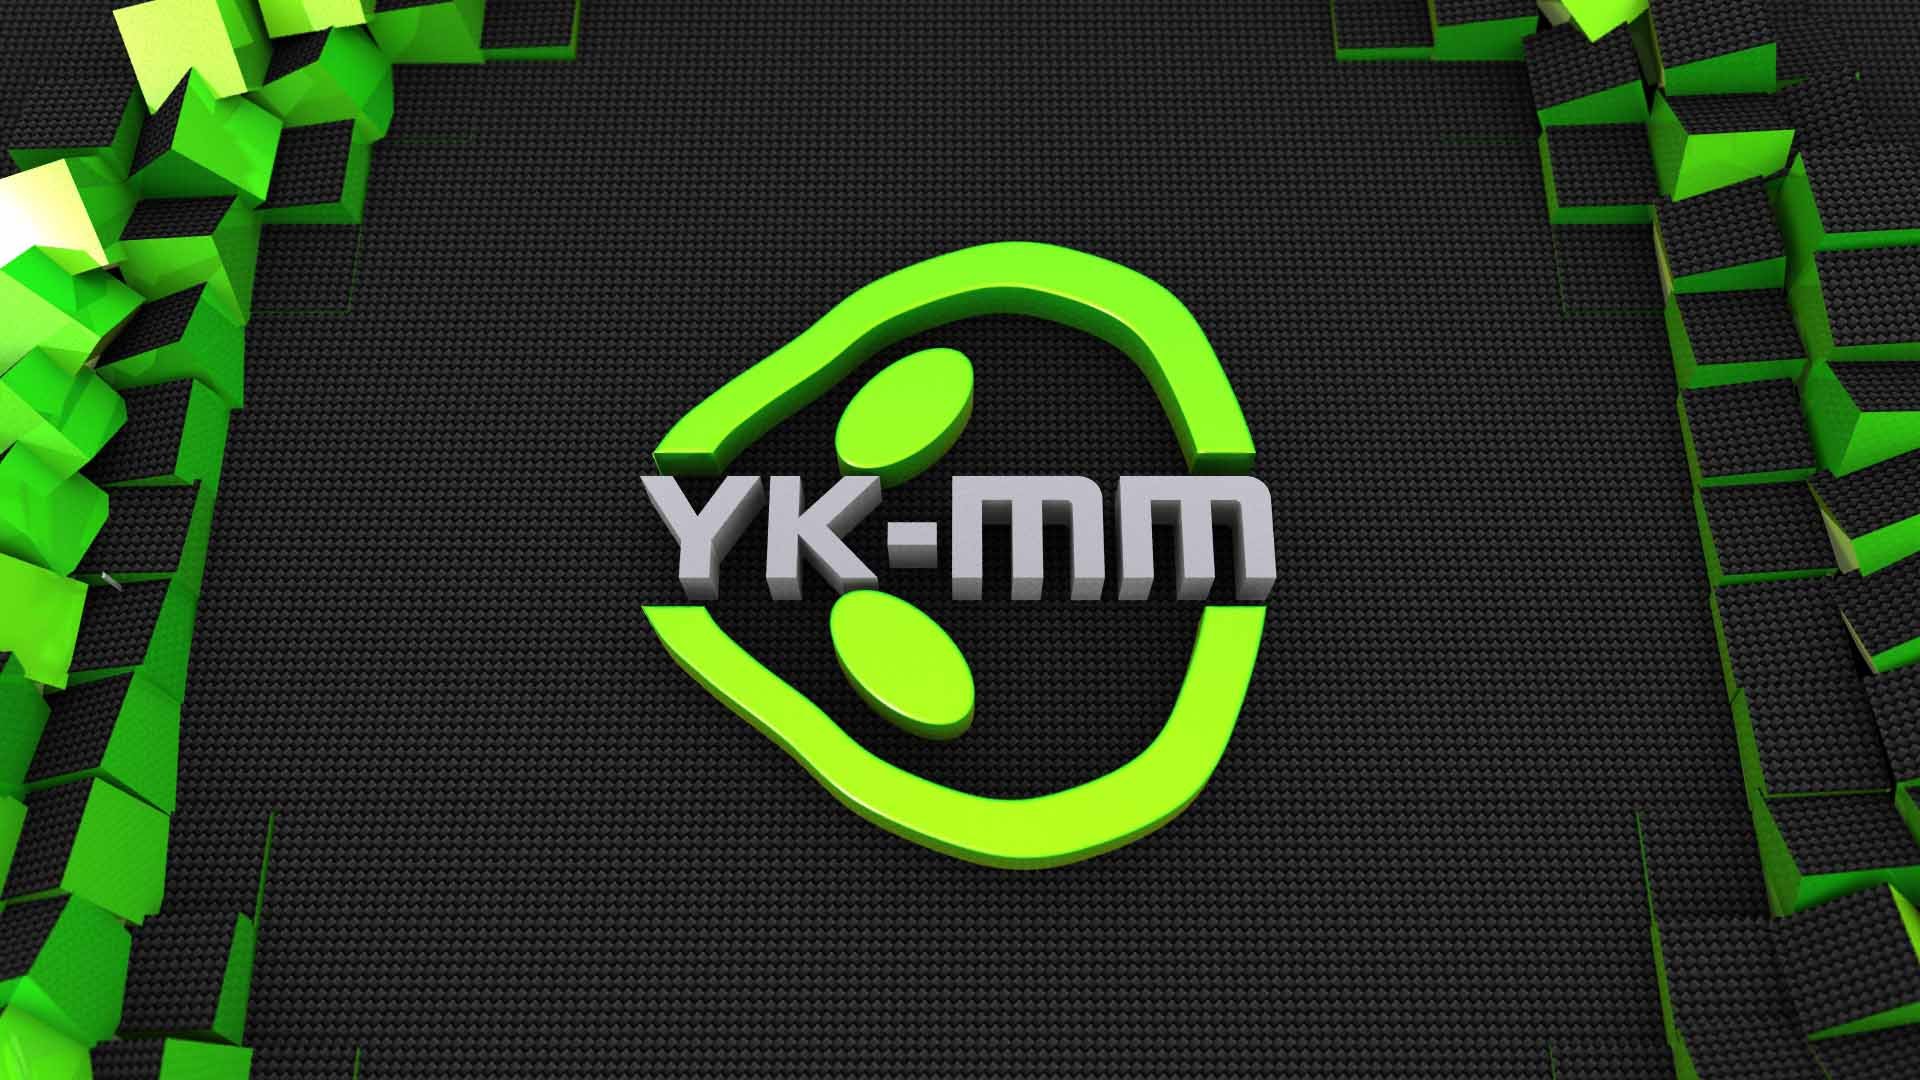 YK-MM logo